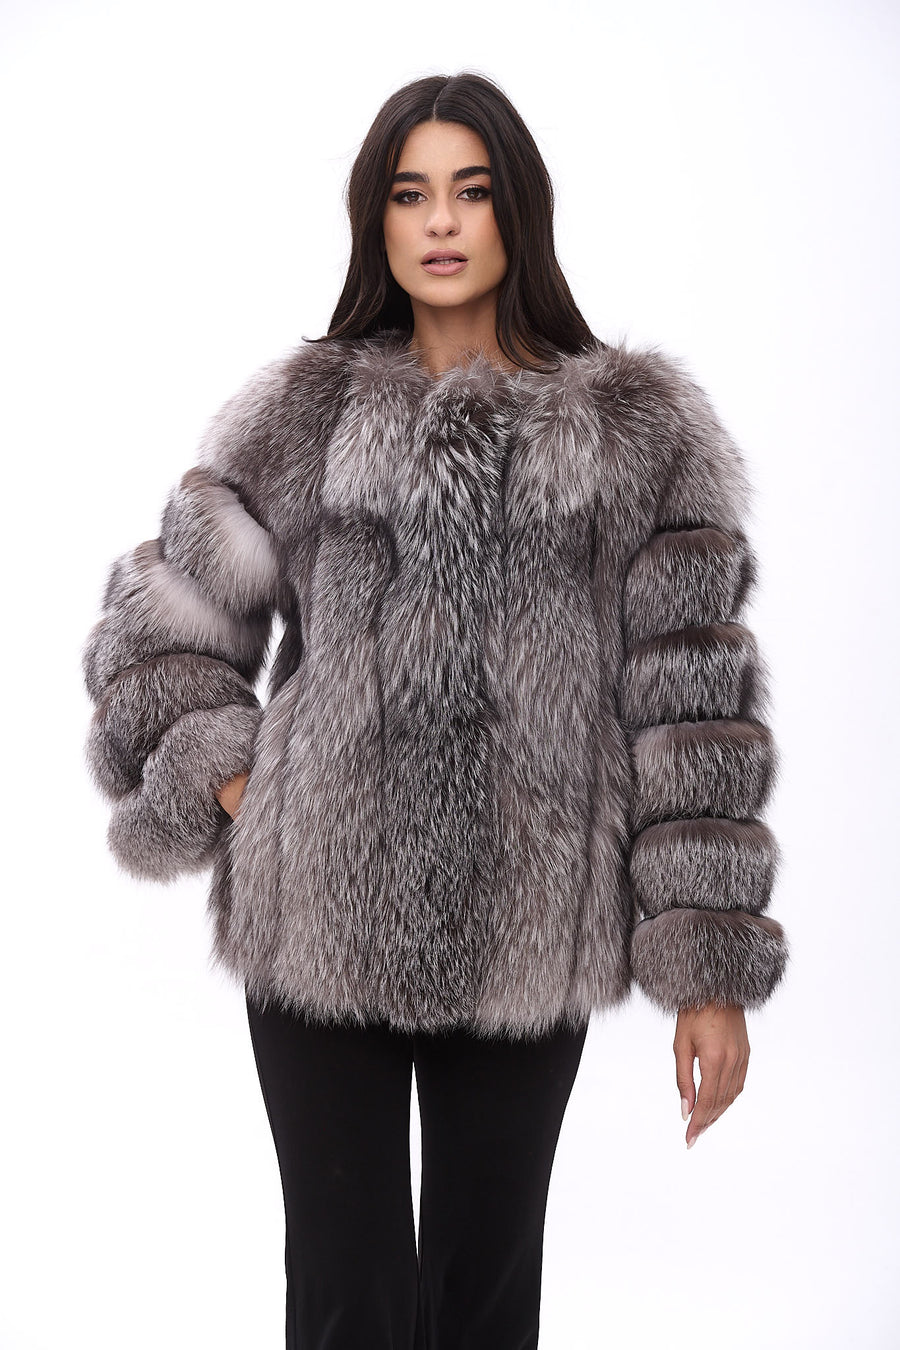 Manakas Fur Shop | Coats, Jackets, Boleros, Reversibles, Vests ...